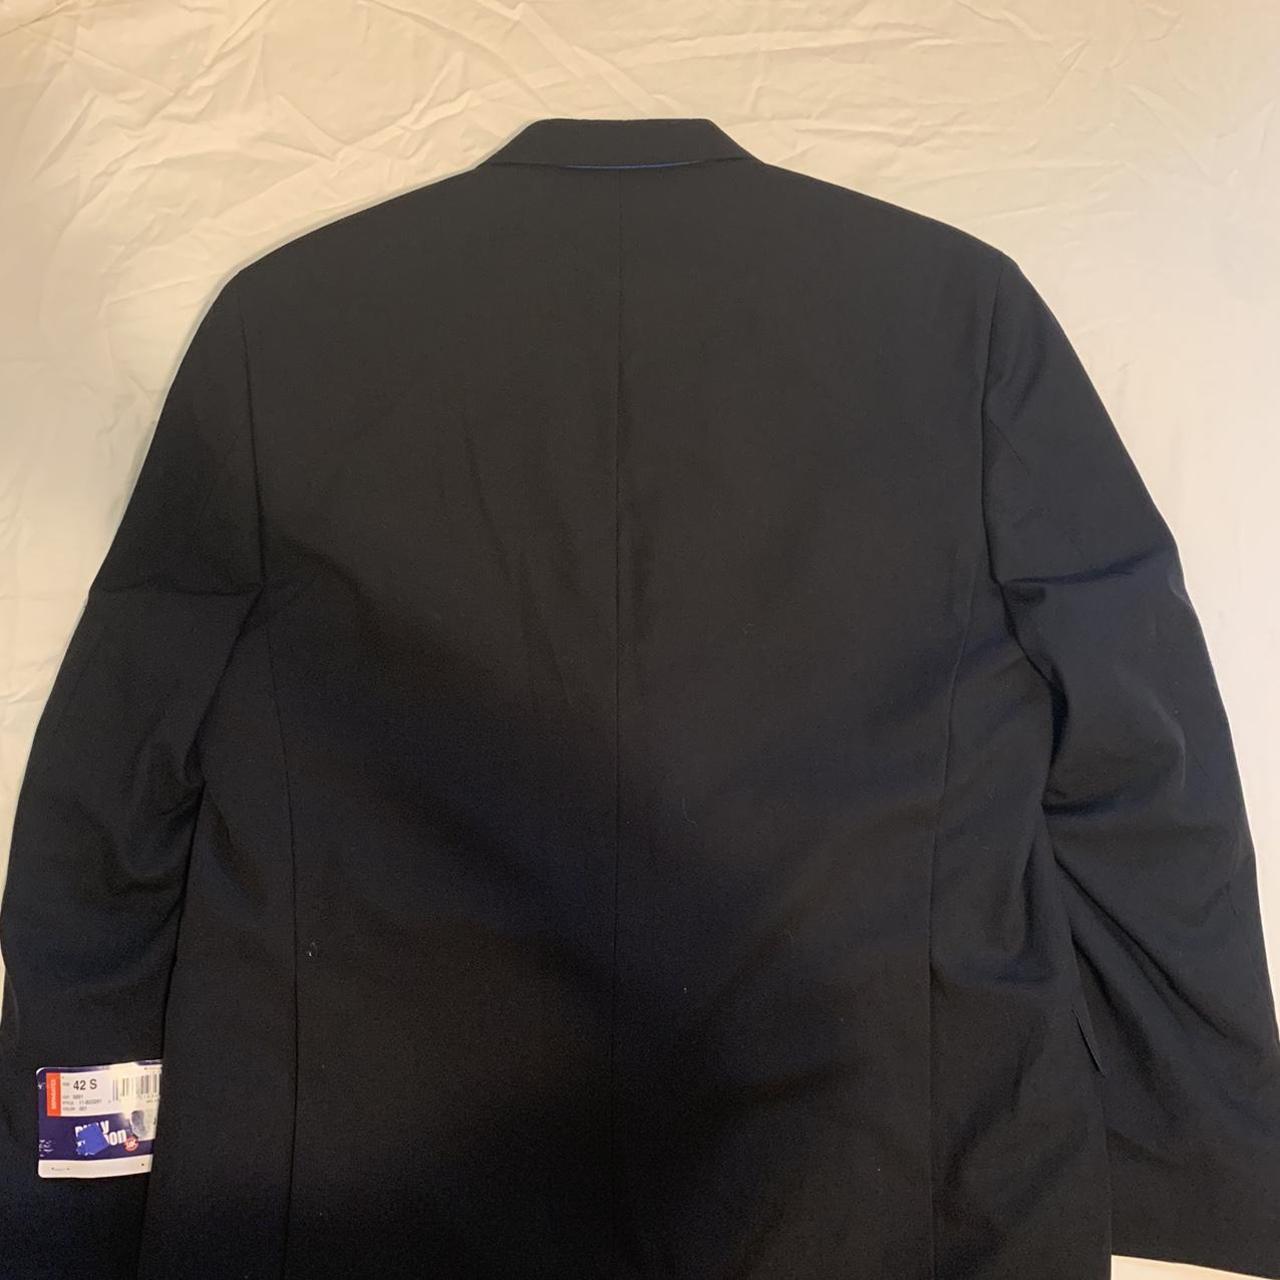 Product Image 2 - Black oversized blazer